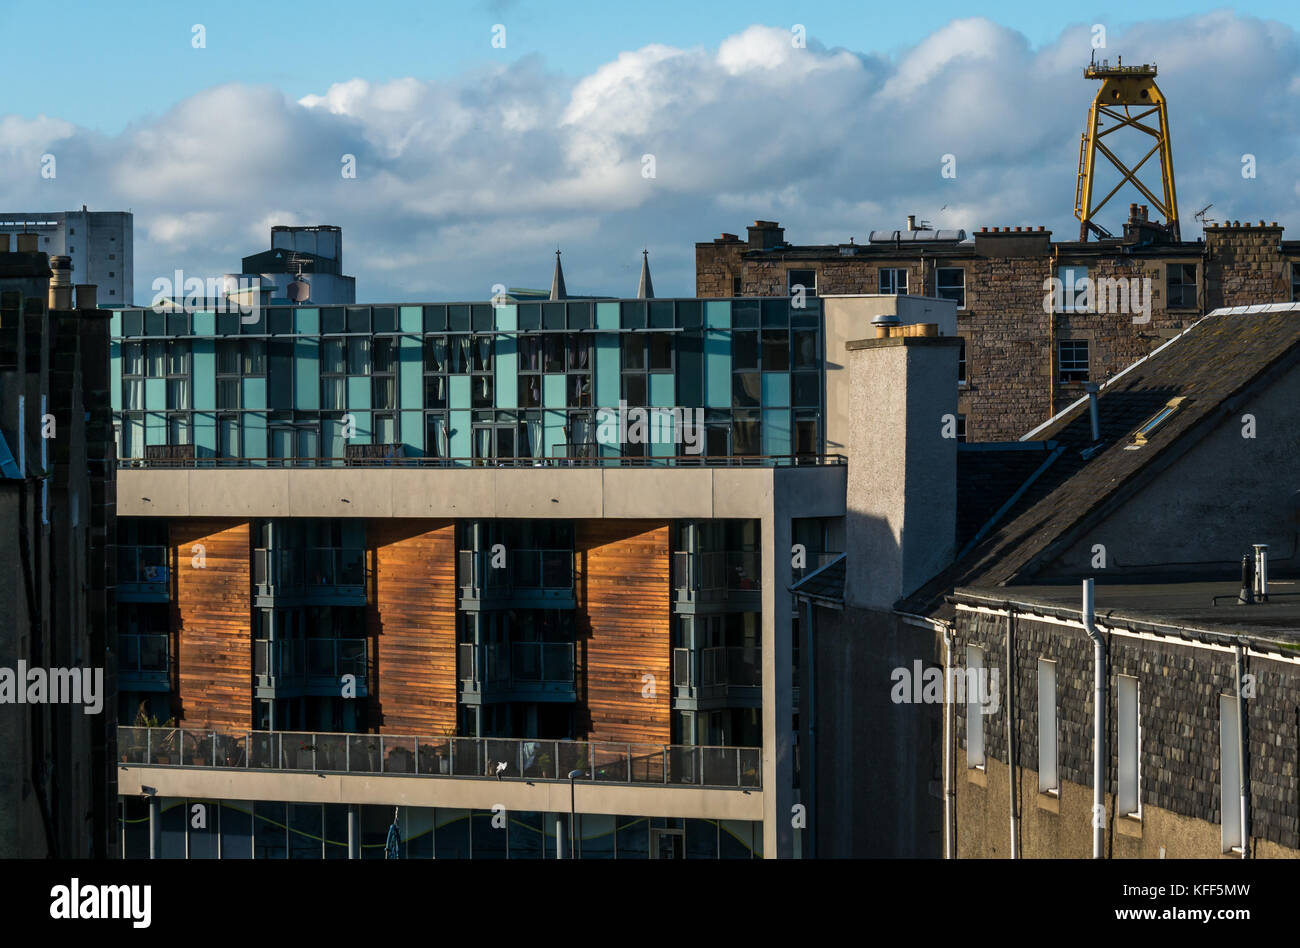 Blick über die Dächer des alten und modernen Gebäuden in Leith, Edinburgh, Schottland, Großbritannien, mit riesigen gelben wind turbine Plattform im Abstand Stockfoto